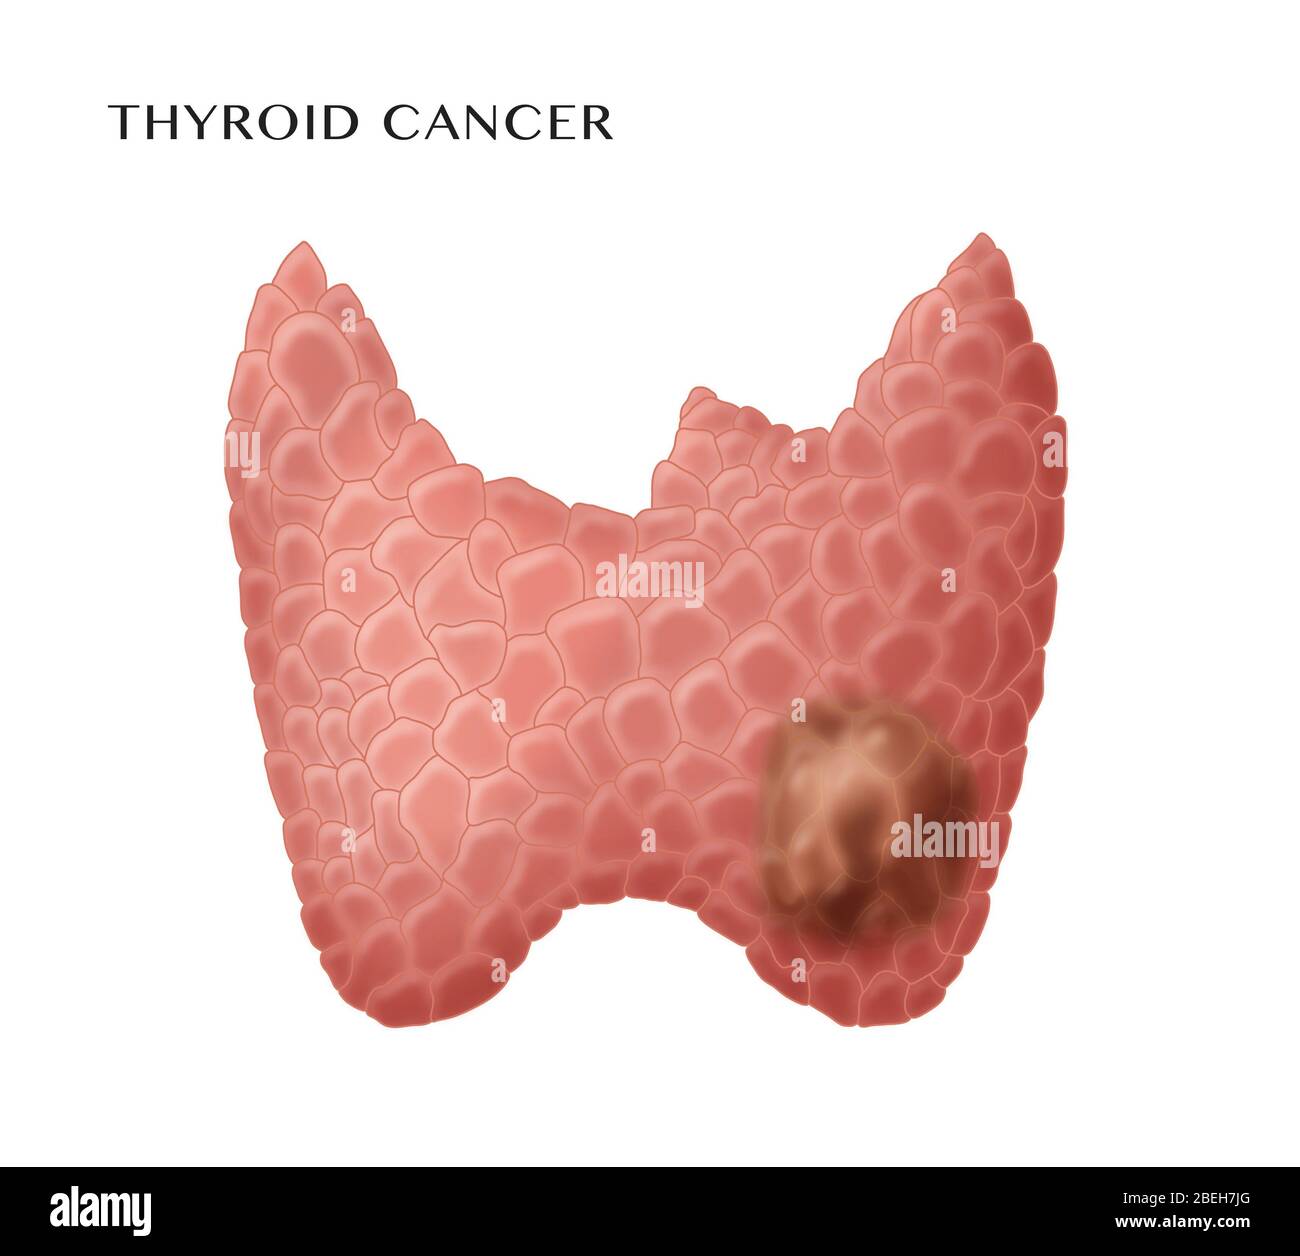 Thyroid Cancer Stock Photo